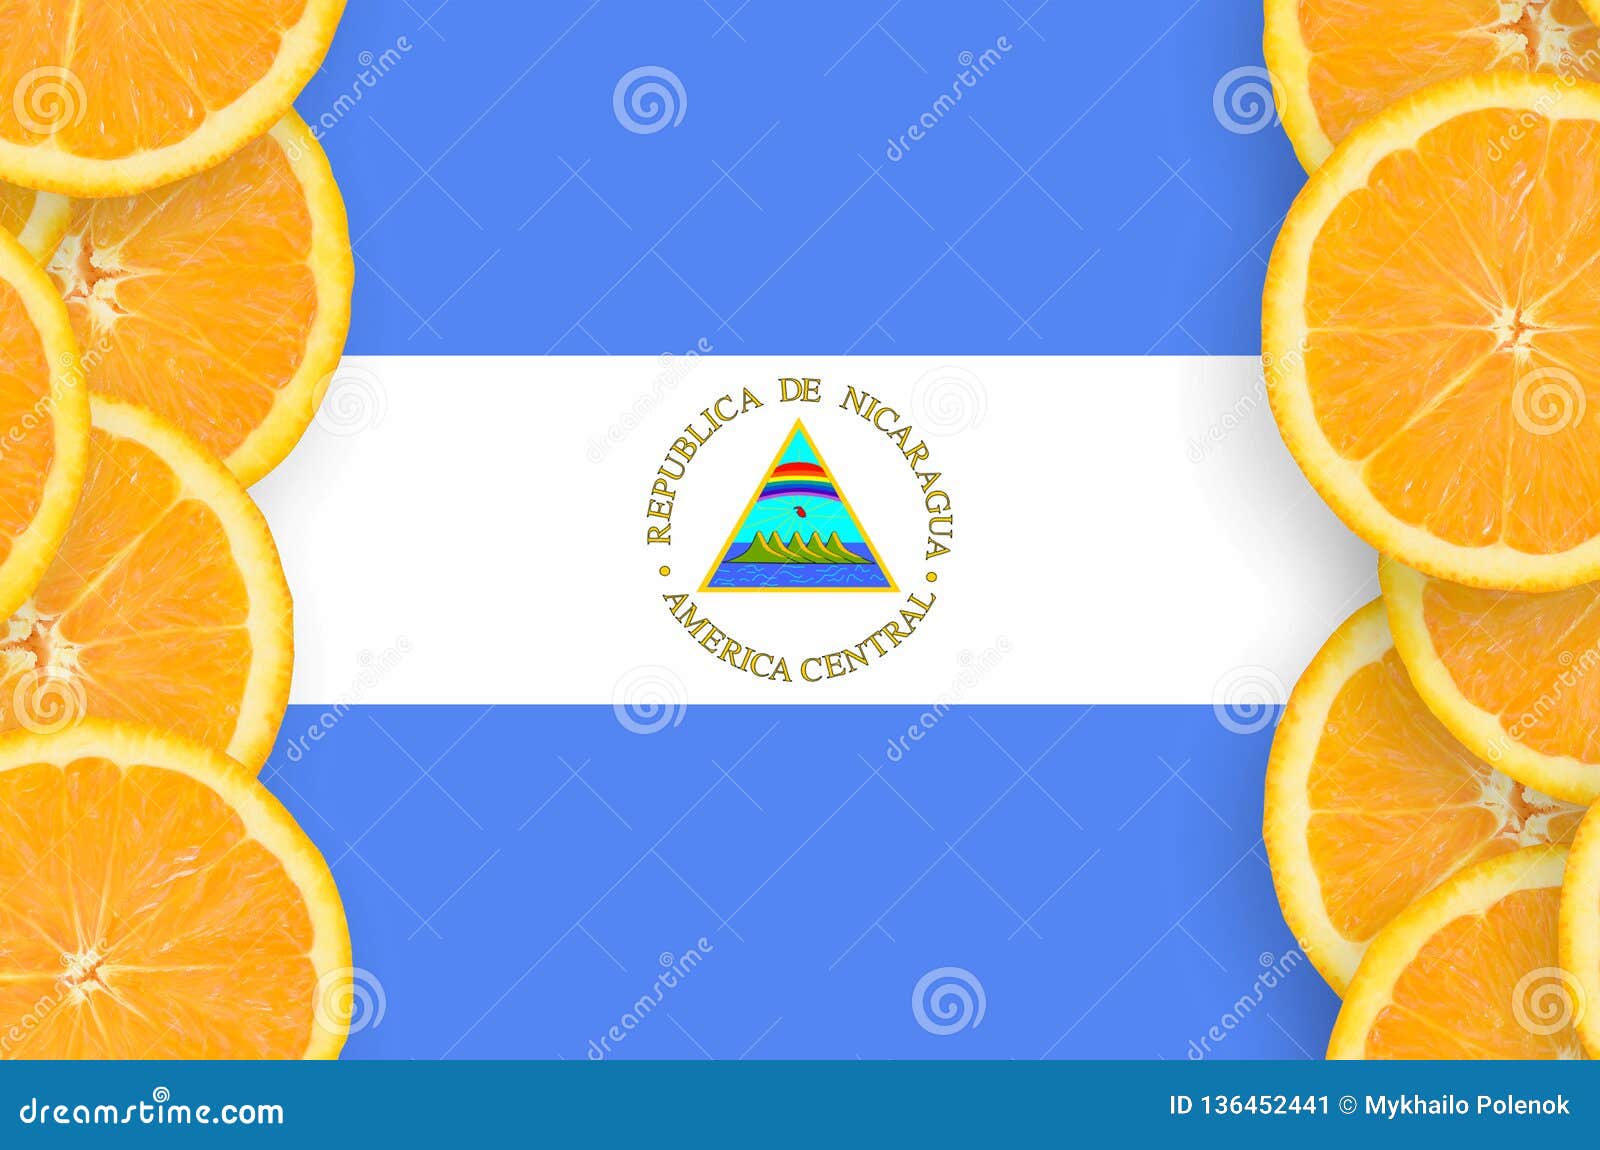 nicaragua flag in citrus fruit slices vertical frame